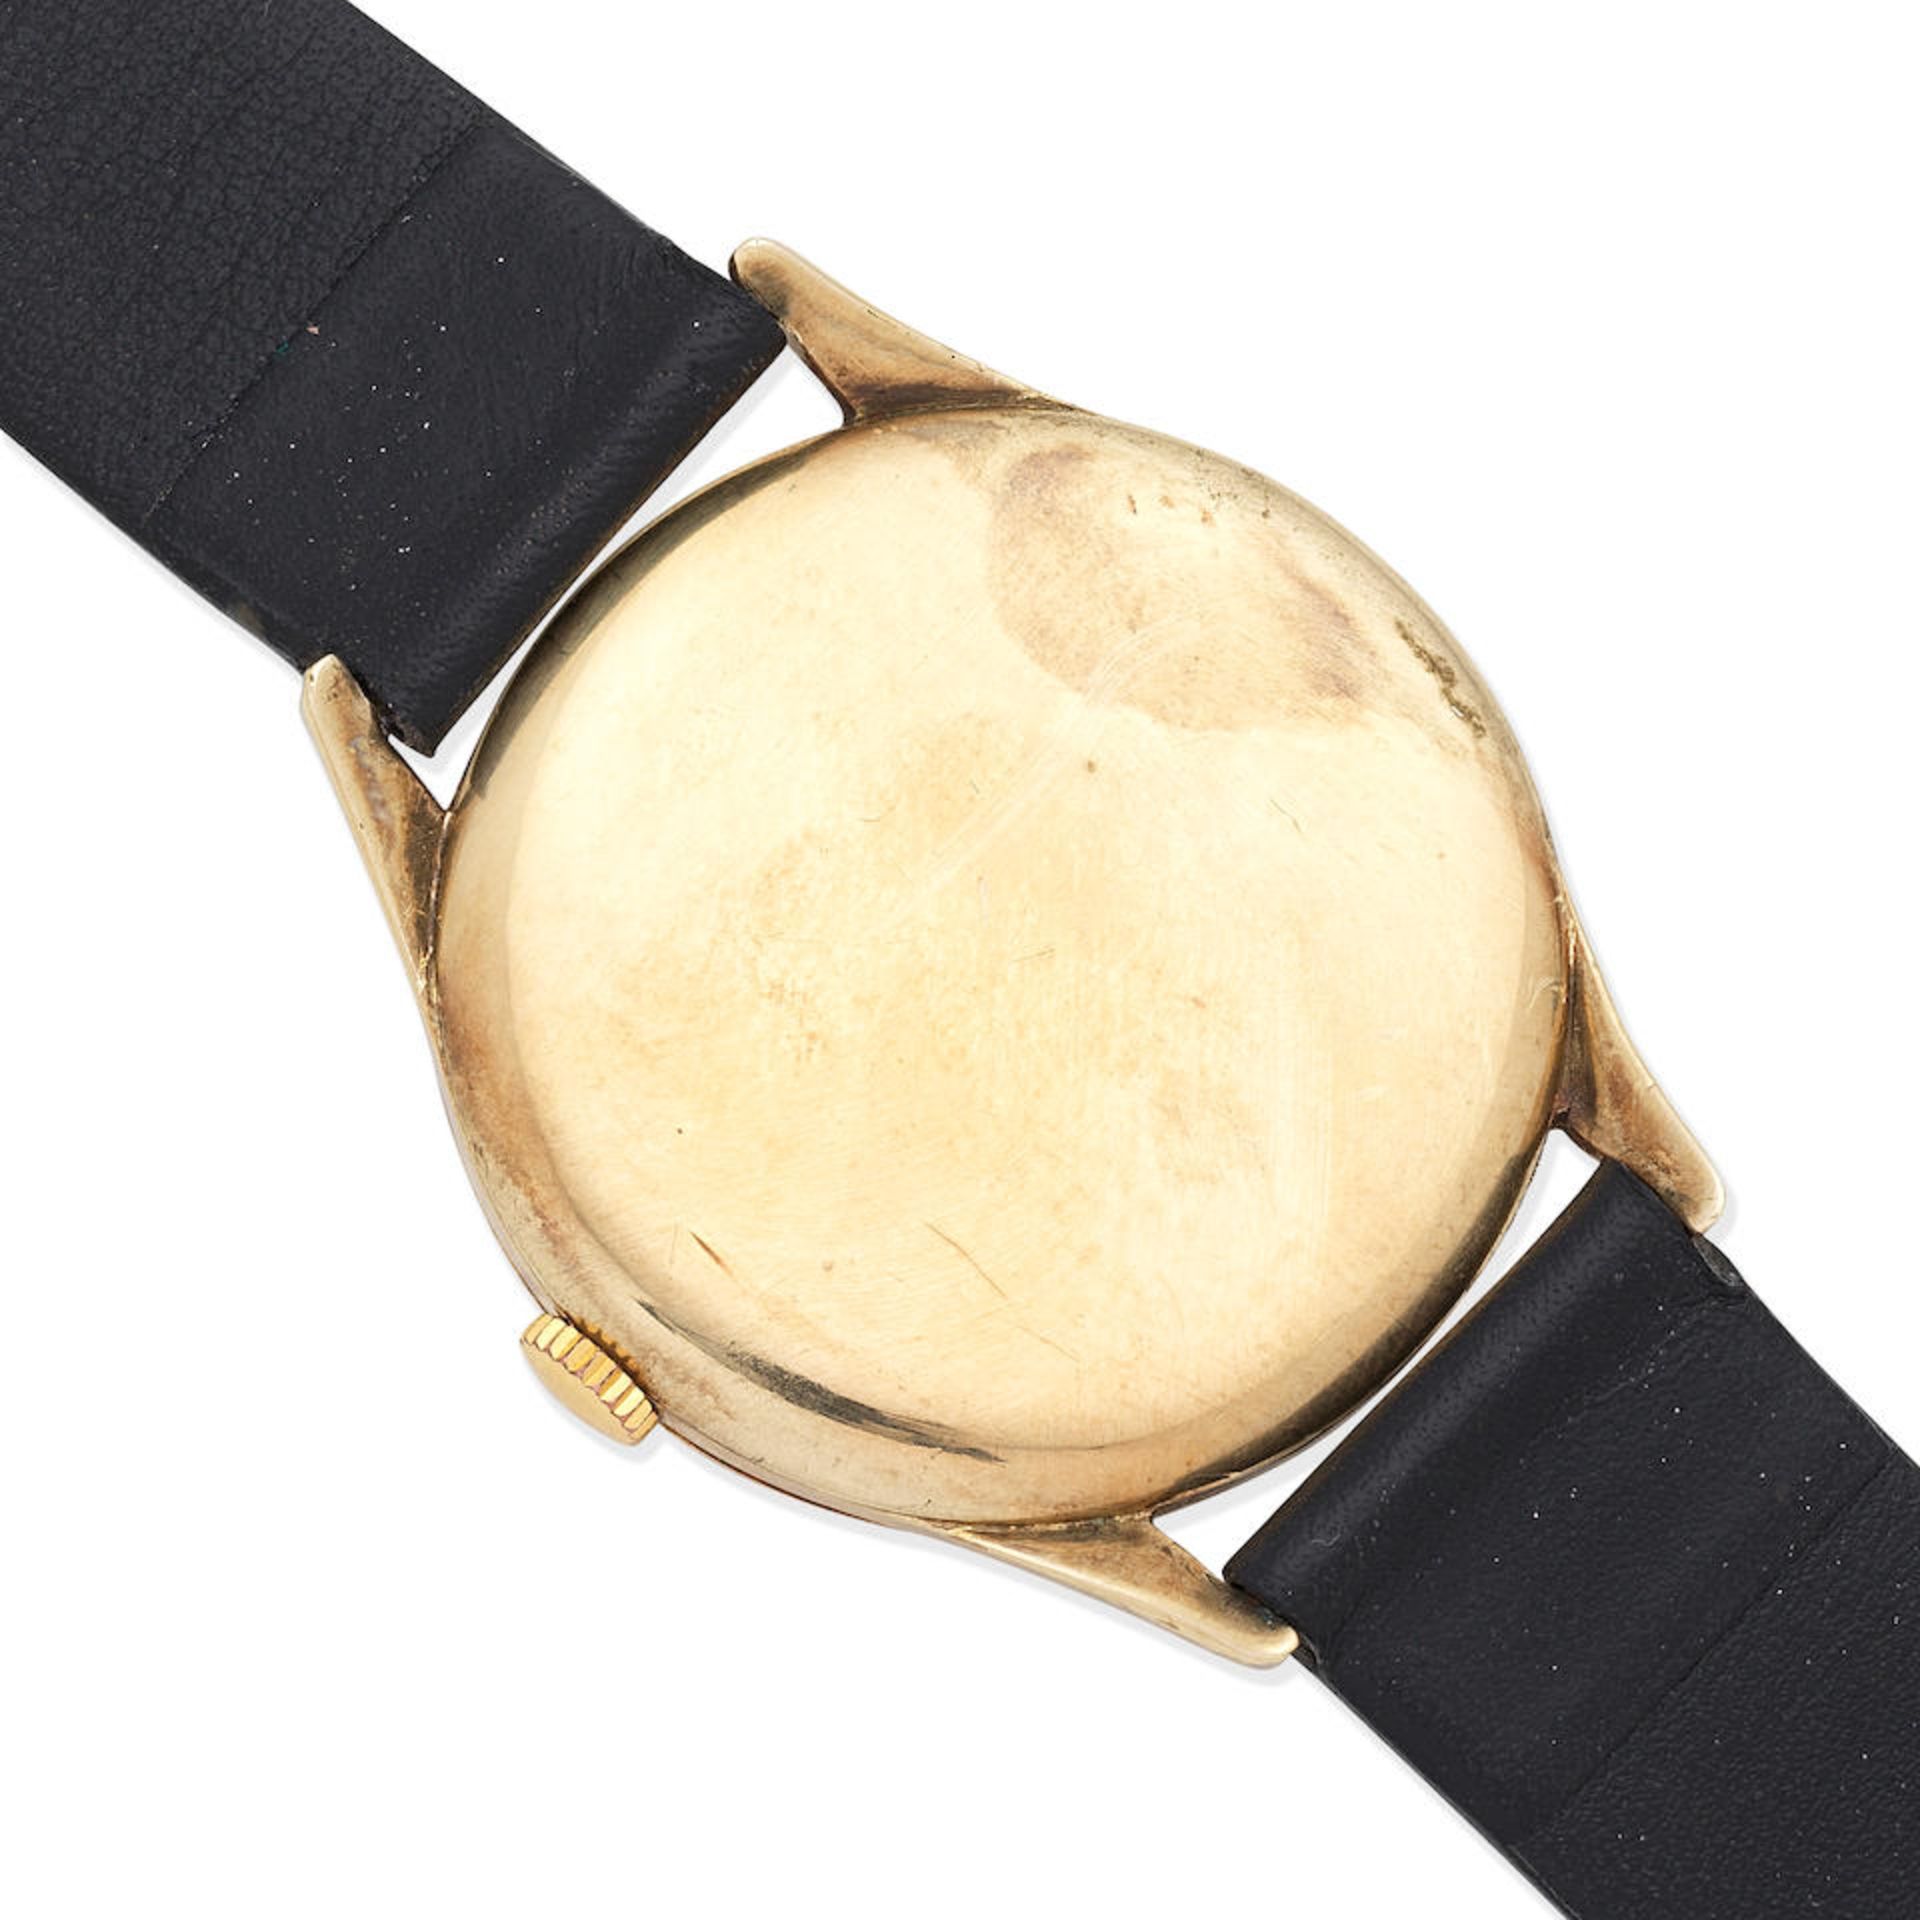 Longines. A 9K gold manual wind wristwatch Ref: 6986 1, Circa 1959 (Hallmarks indistinct) - Bild 4 aus 5